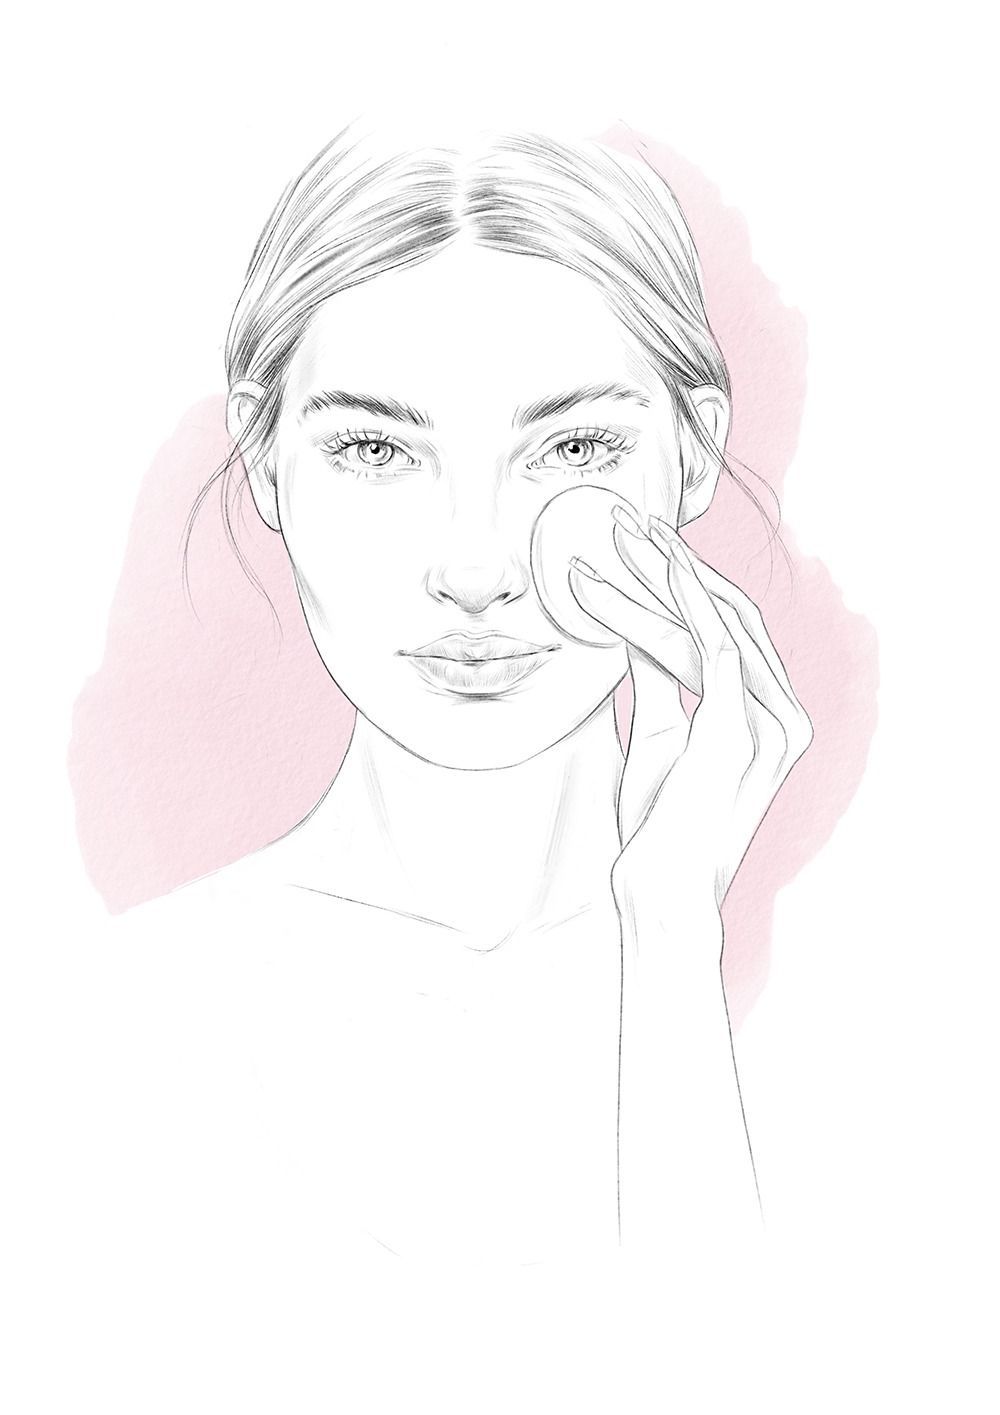 8 beauty Face illustration ideas